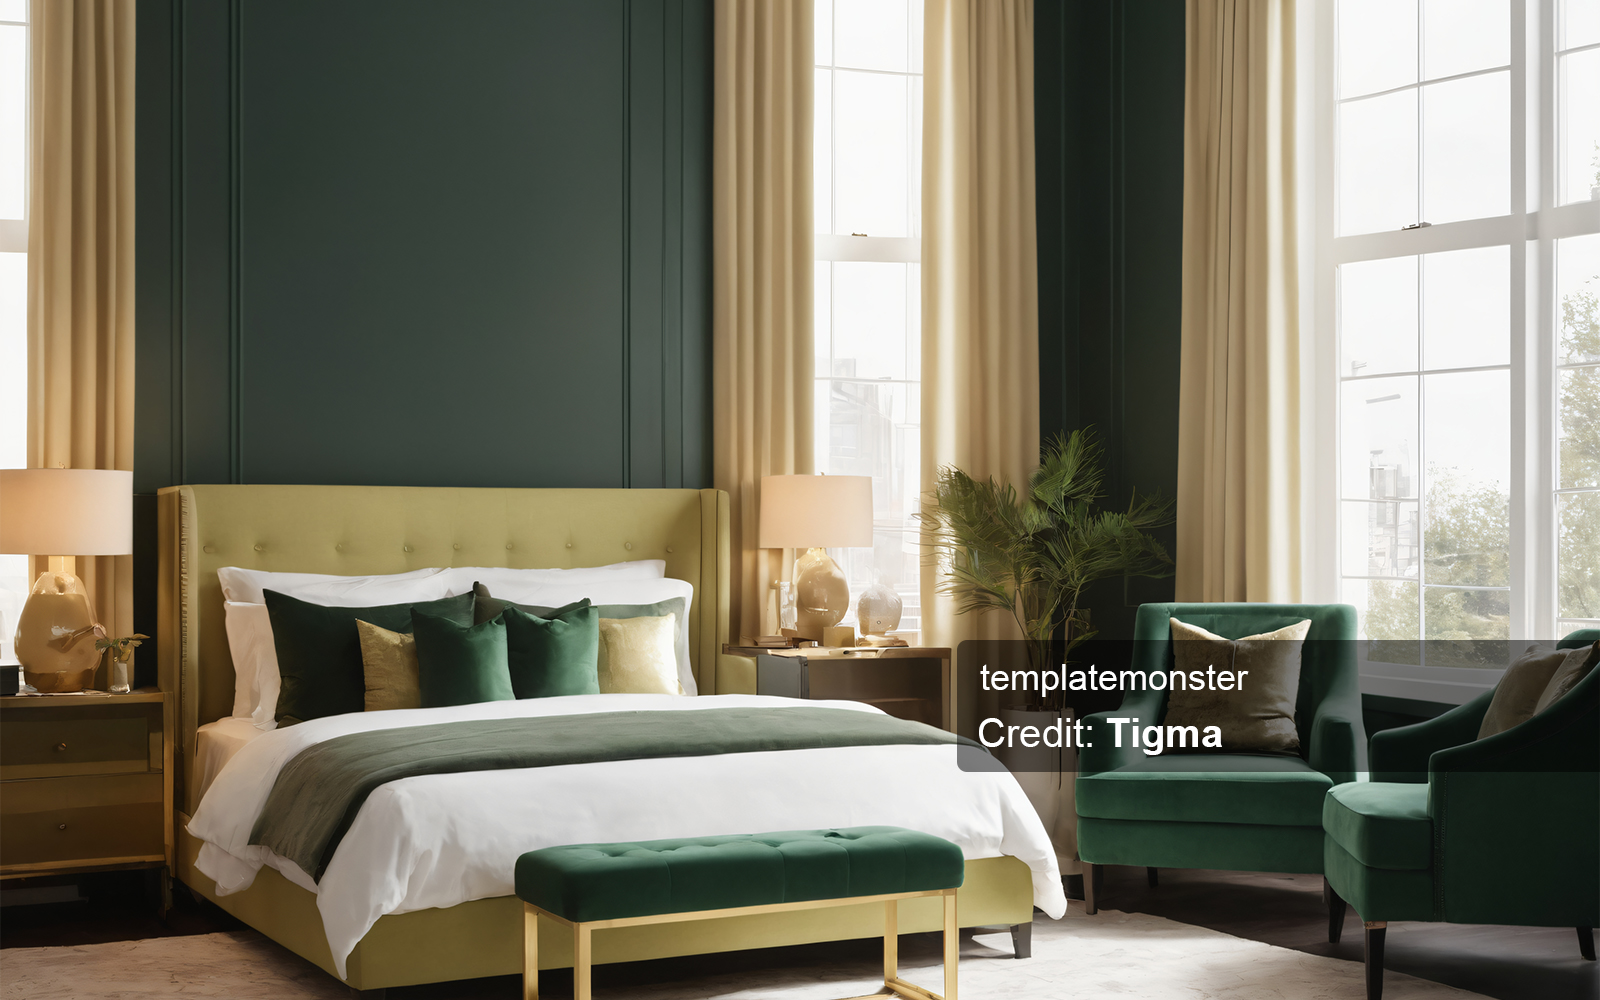 Modern and Elegant Bedroom Interior Design: A Digital Download for Your Home Decor